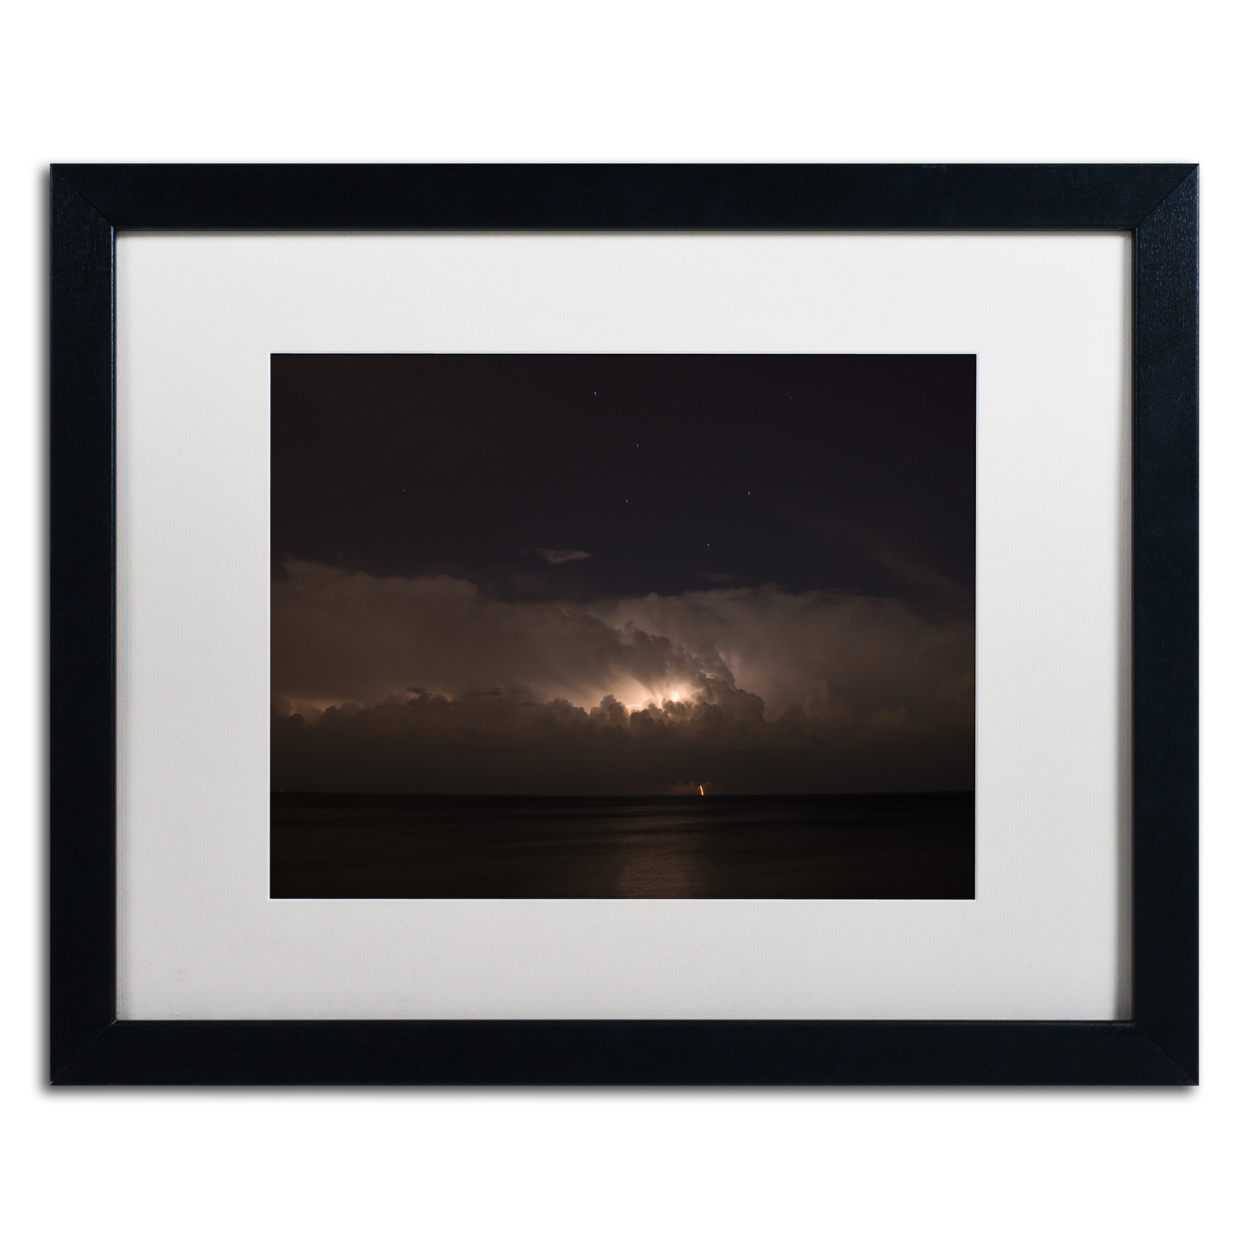 Kurt Shaffer 'Big Dipper Thunderstorm' Black Wooden Framed Art 18 X 22 Inches